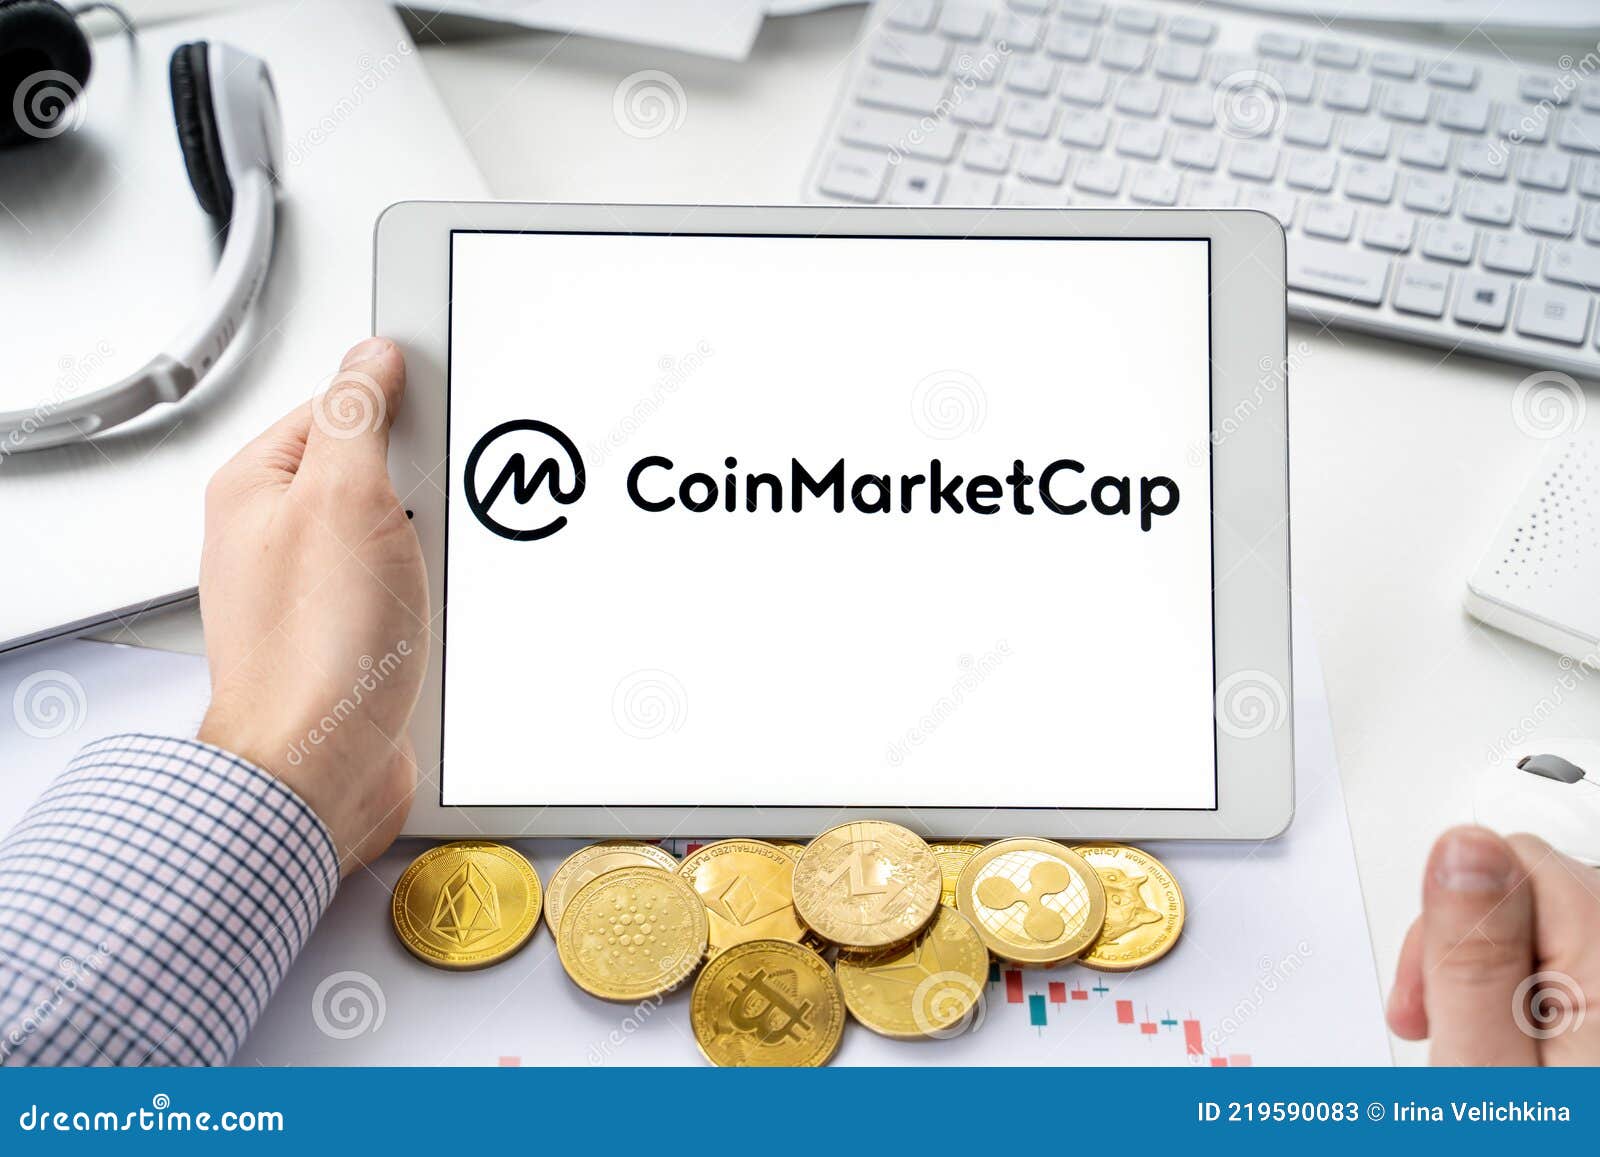 Coin market cap exchange